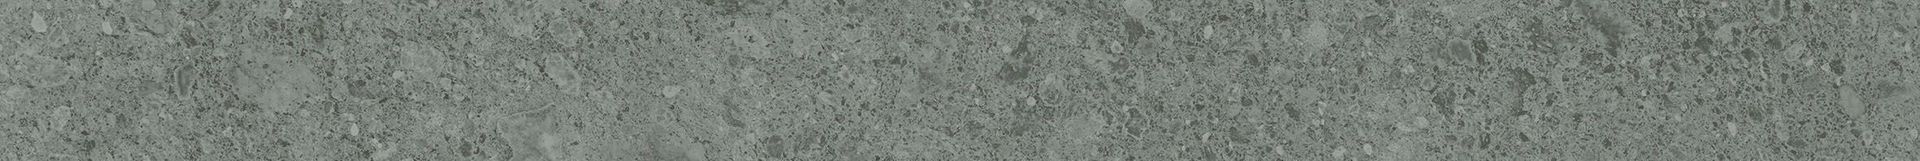 Плитка из керамогранита матовая Italon Дженезис 7.2x60 серый (610130002154) плитка из керамогранита матовая italon дженезис 15x15 серый 600010001993